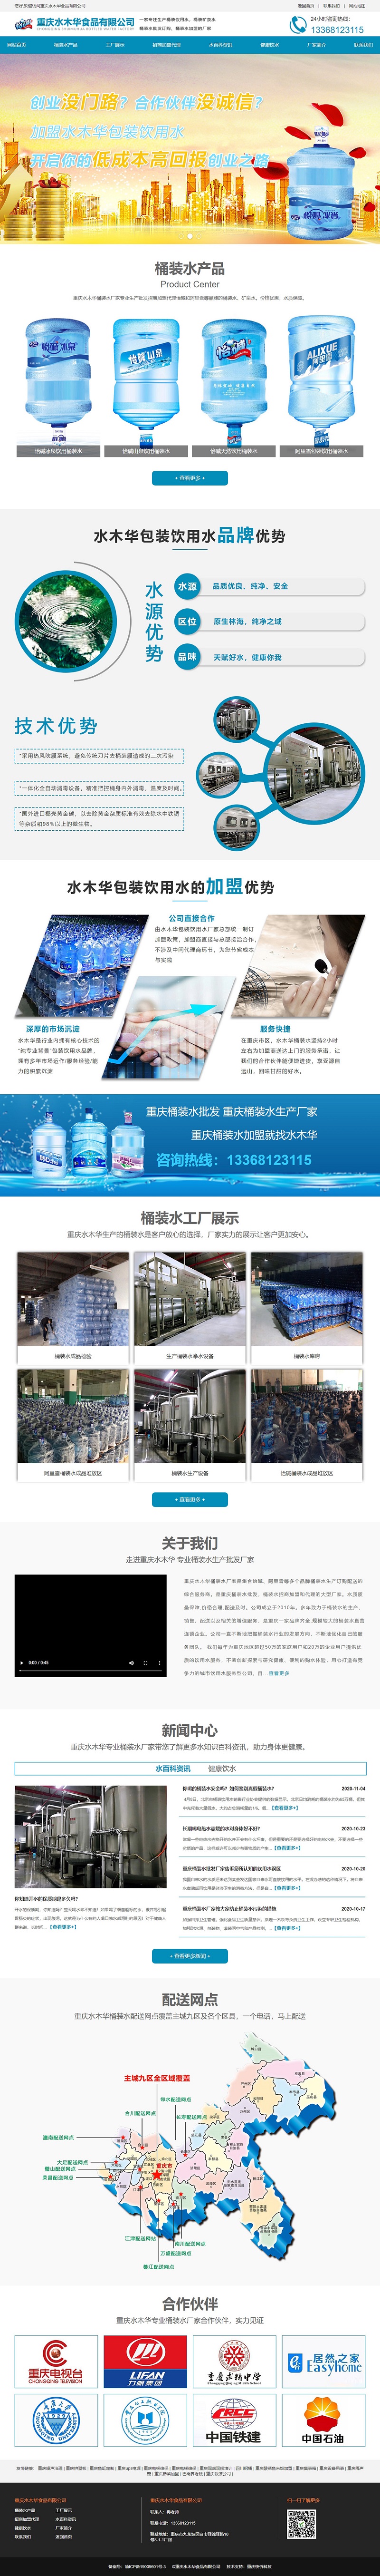 重庆水木华桶装水批发网站建设案例